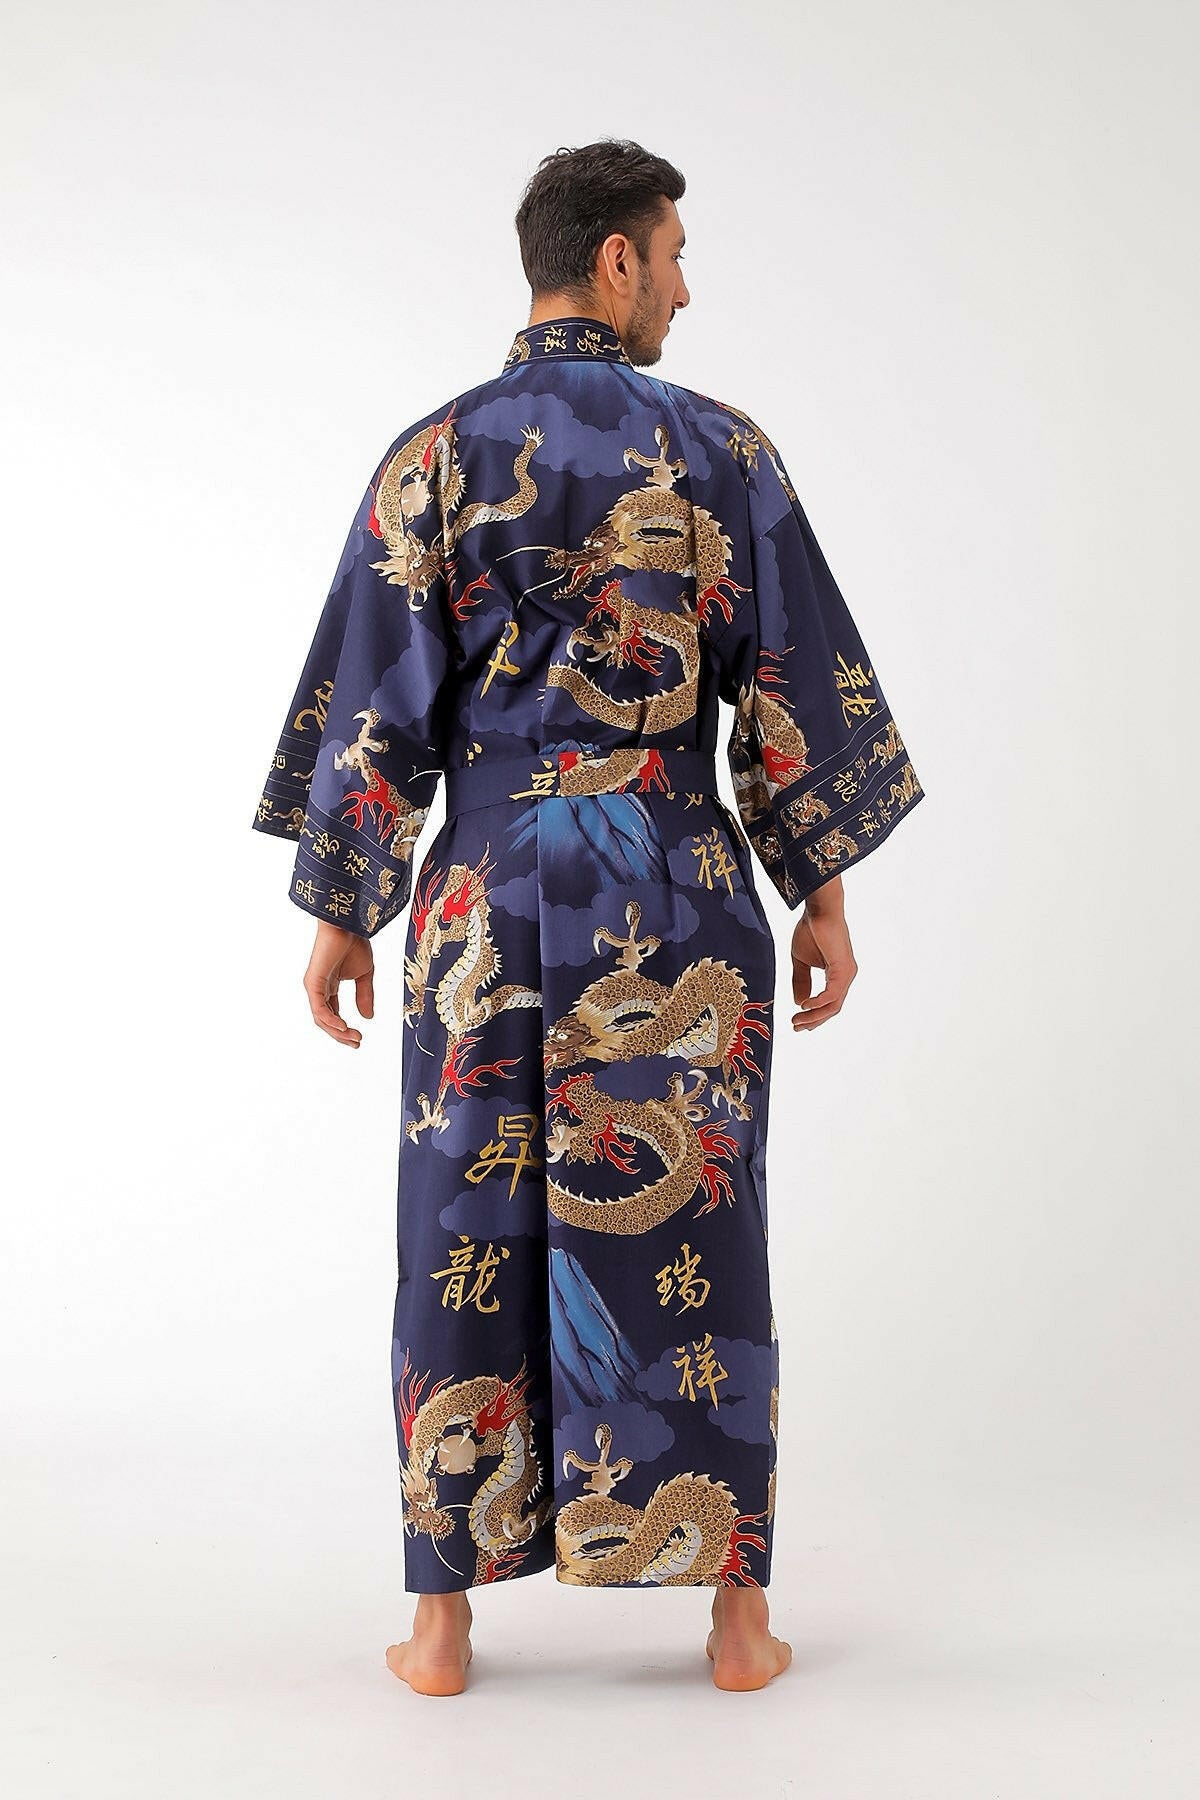 Kimono Japones Hombre 'Fujioka' - Kimono Hombre - KIMAYU KIMONOS